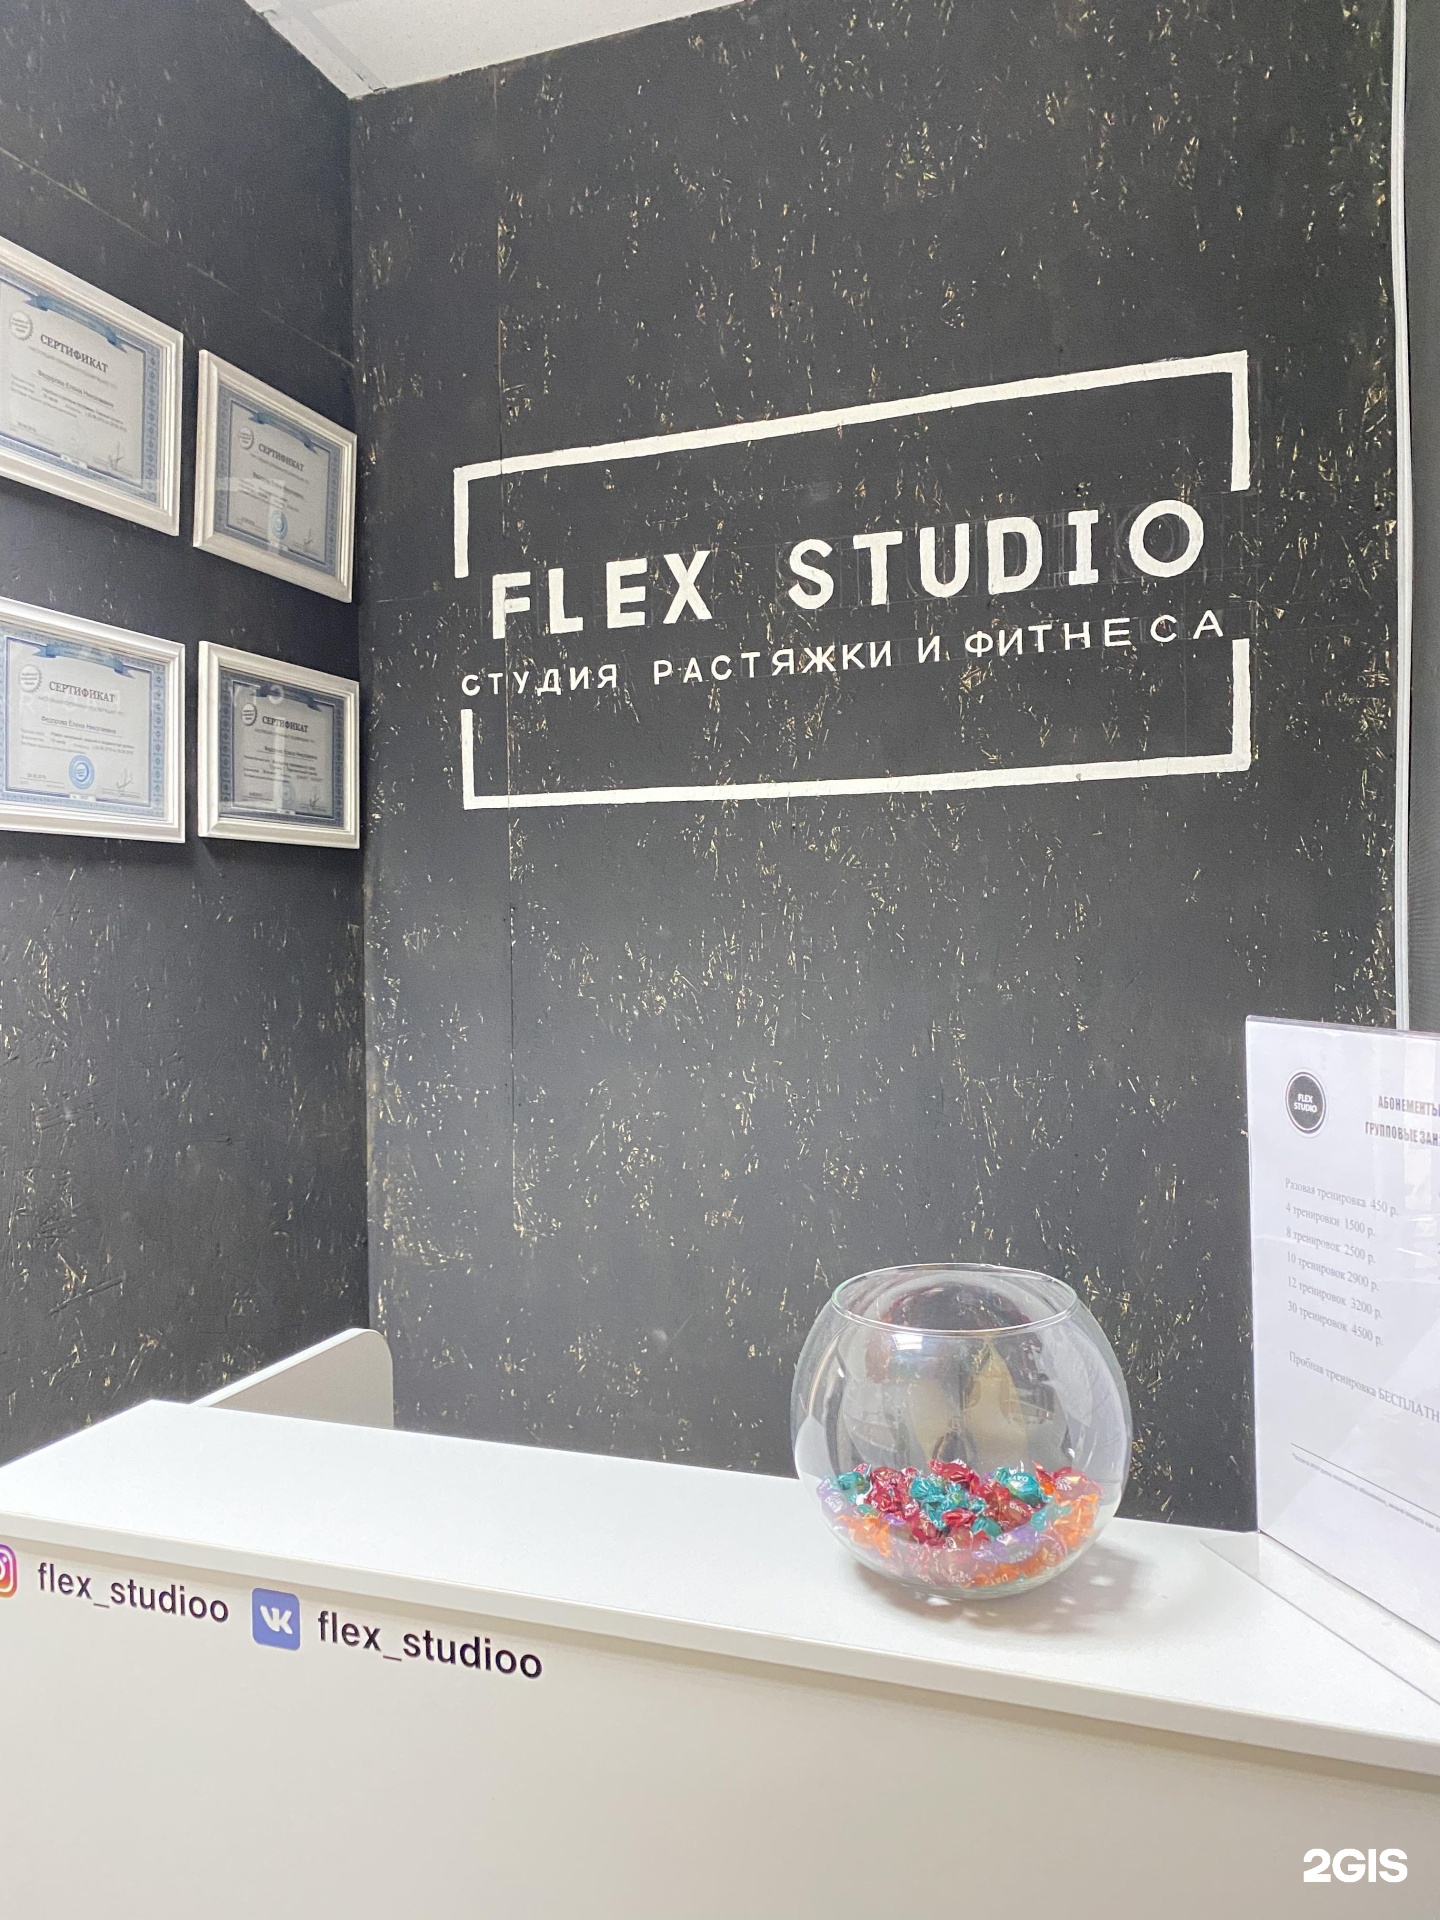 Флекс студия. Студия фитнеса the Flex. Флекс студия Махачкала. Flex Studio в городе Саратов логотип.